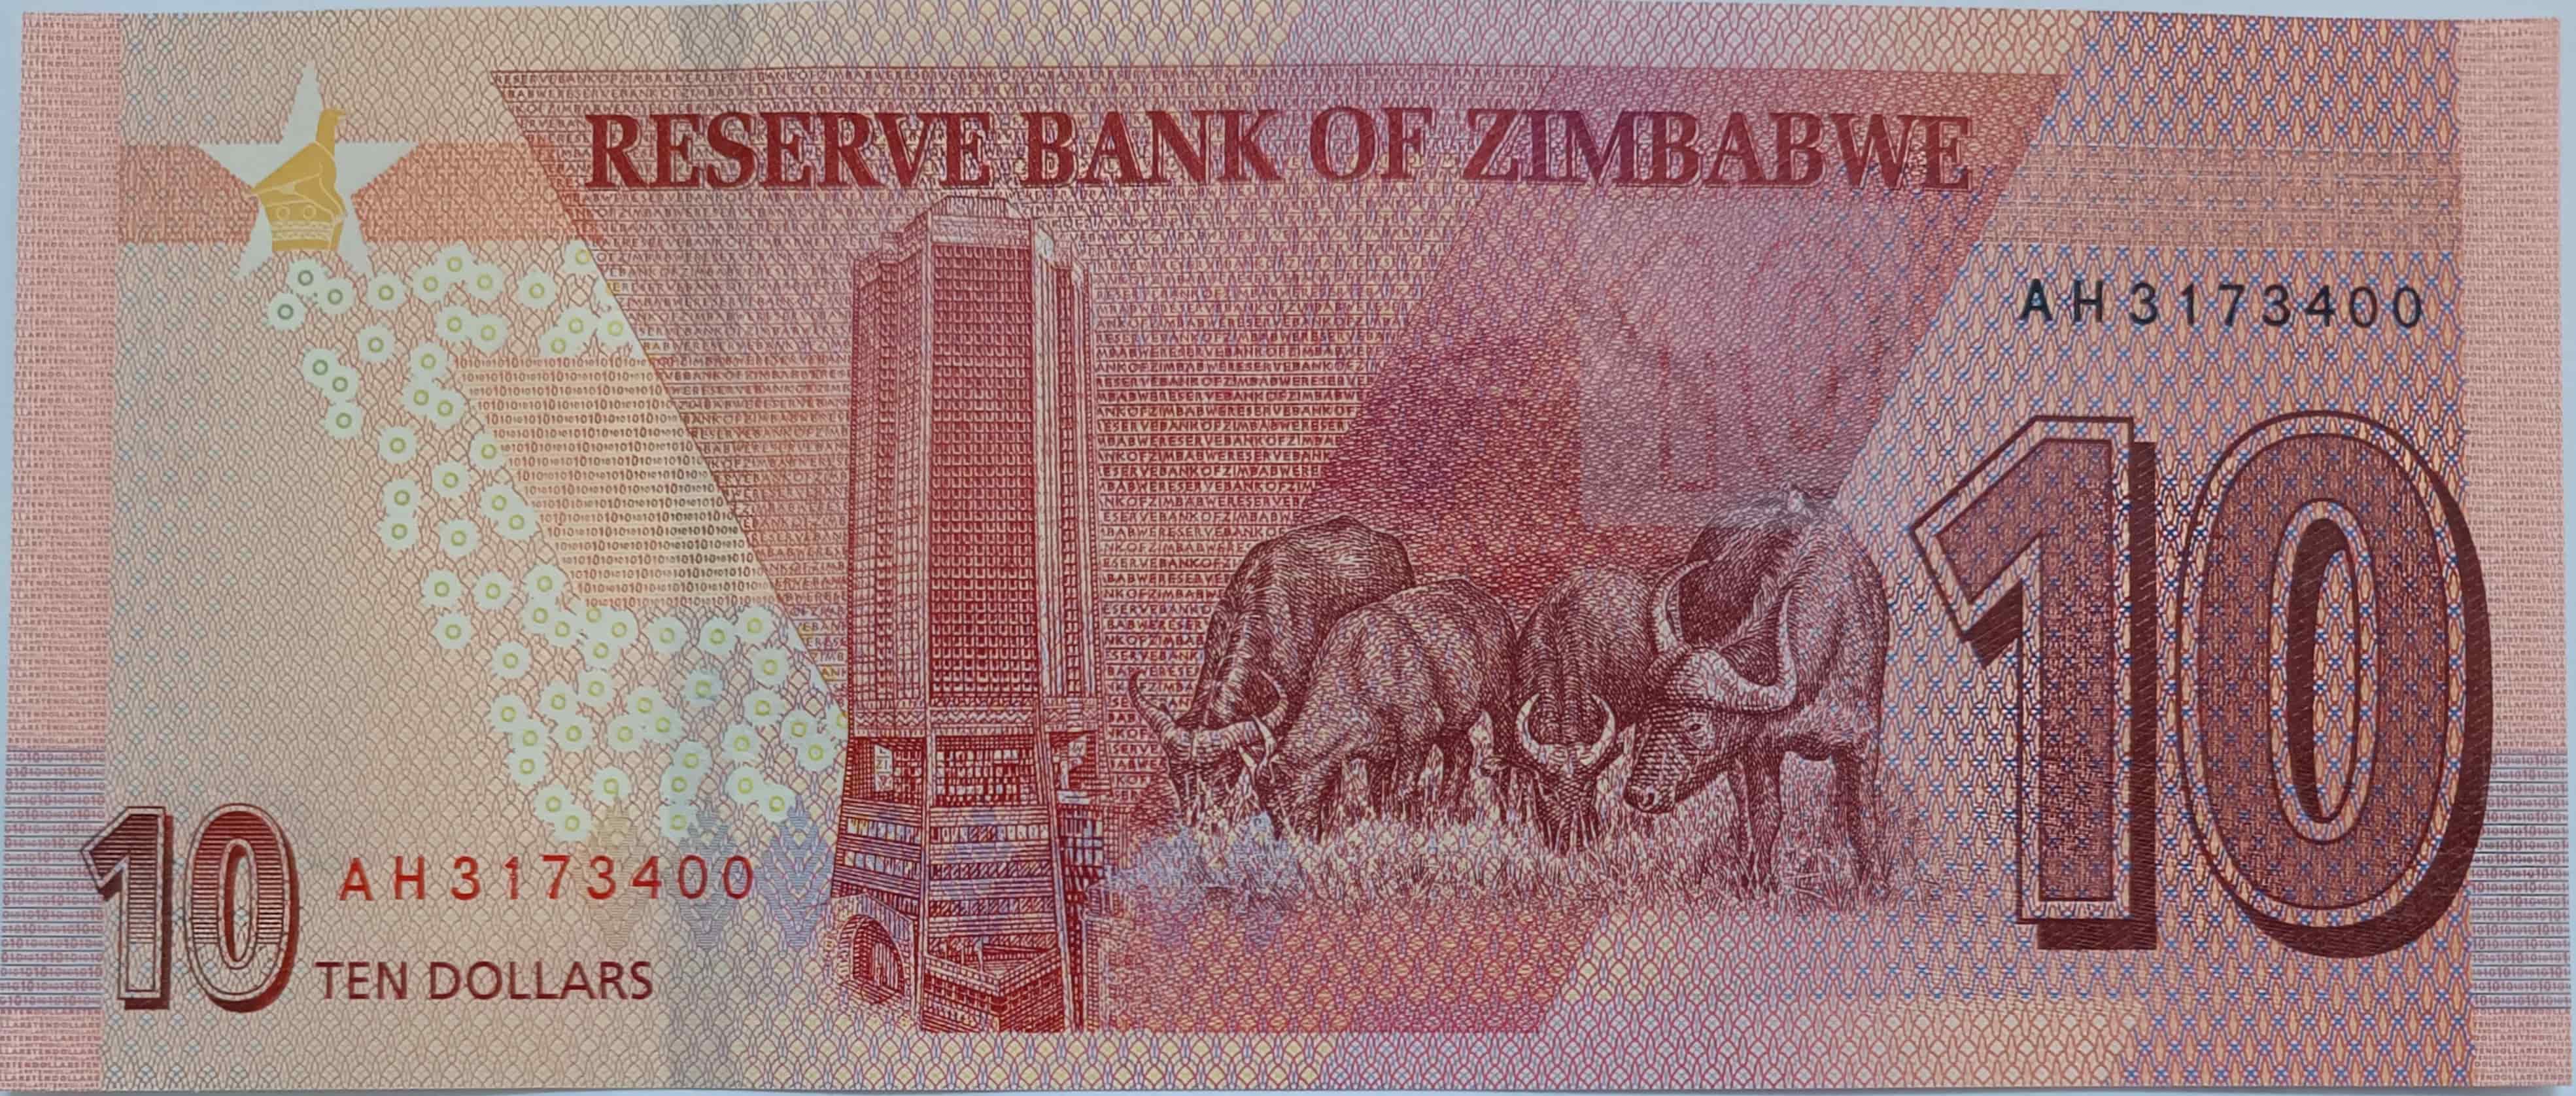 10 dollars 2020 Zimbabwe